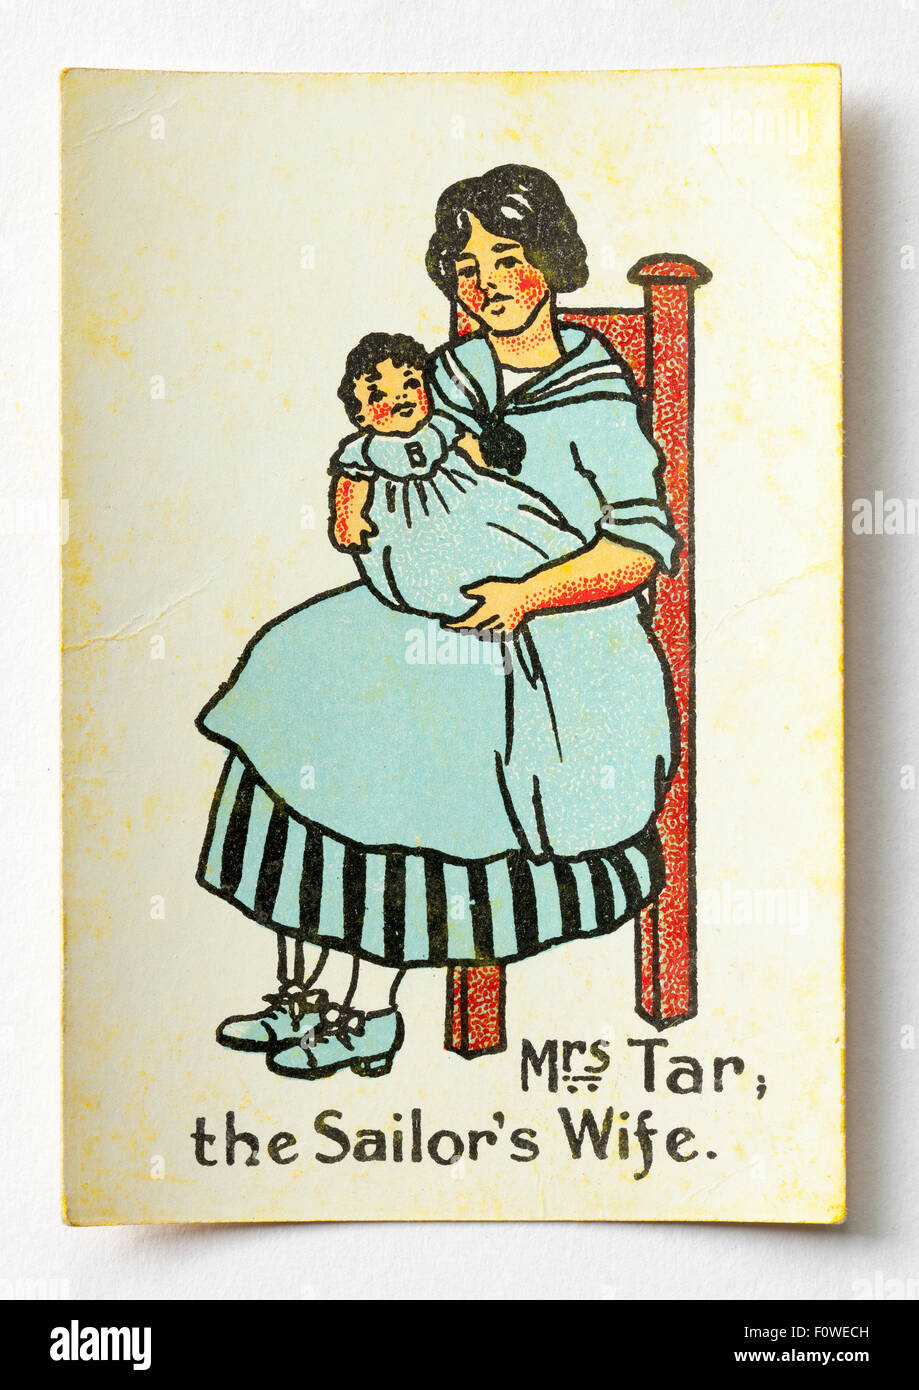 Frau Tar - Segler-Frau - Spielkarte aus einem Vintage Pack für glückliche Familien Stockfoto